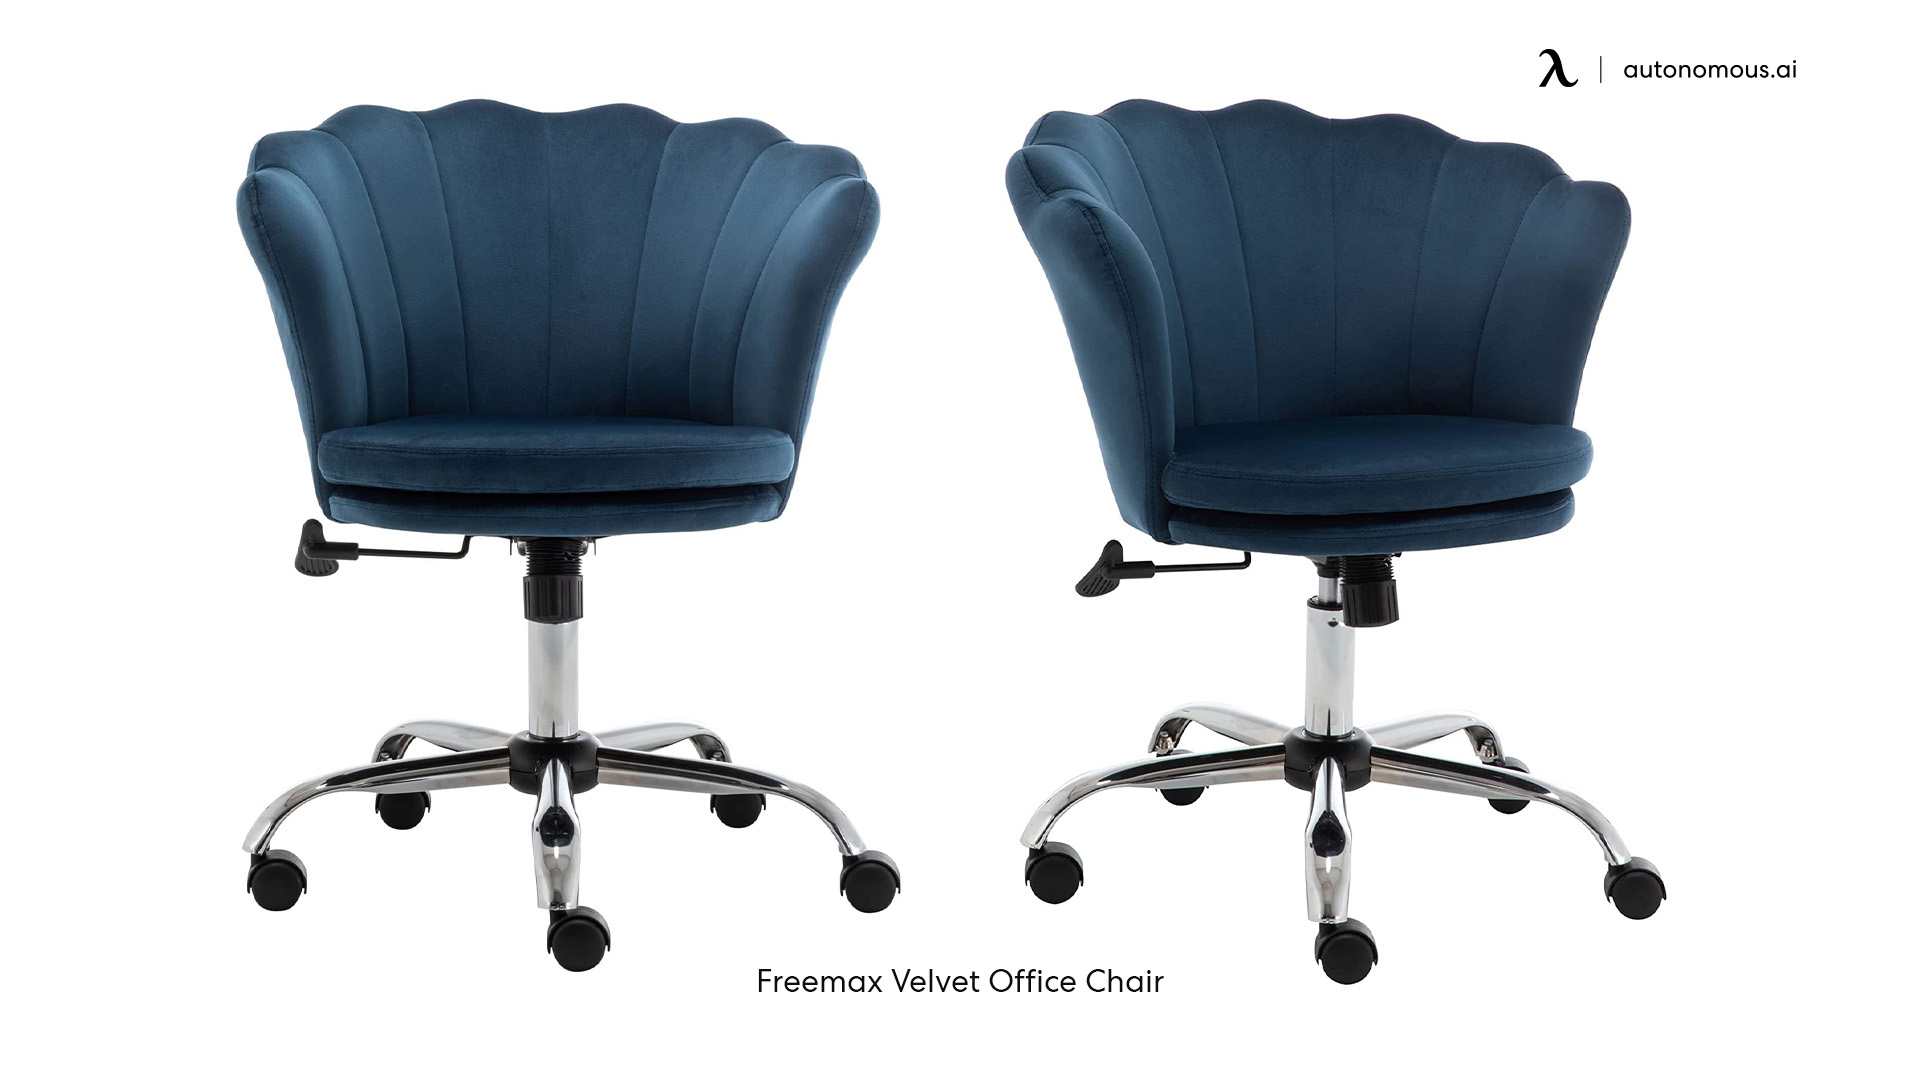 Freemax Velvet Office Chair